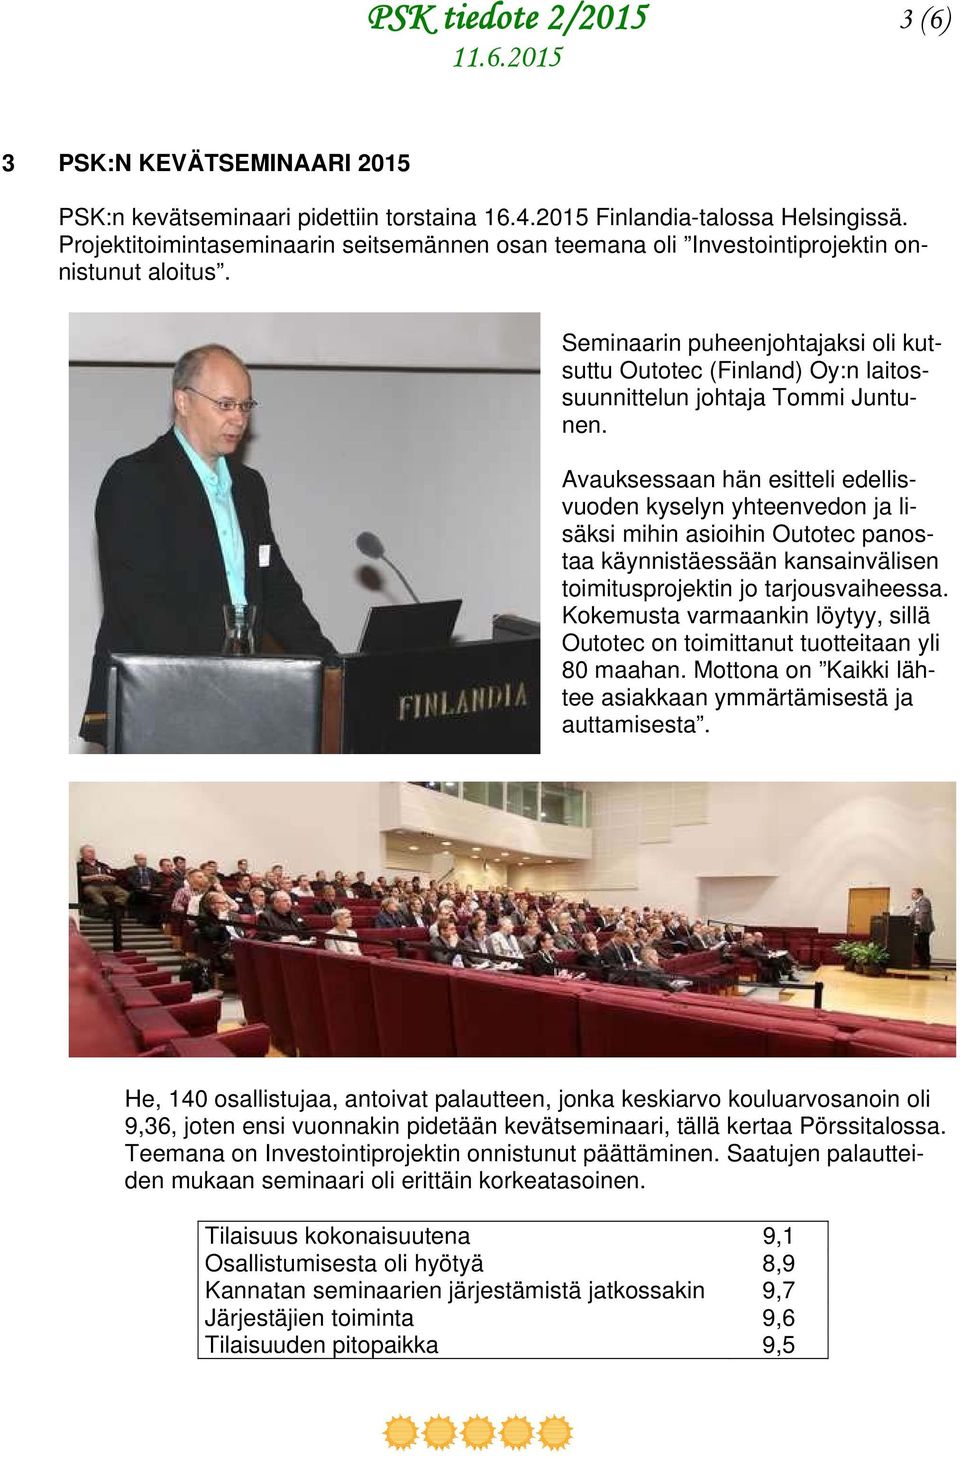 Seminaarin puheenjohtajaksi oli kutsuttu Outotec (Finland) Oy:n laitossuunnittelun johtaja Tommi Juntunen.